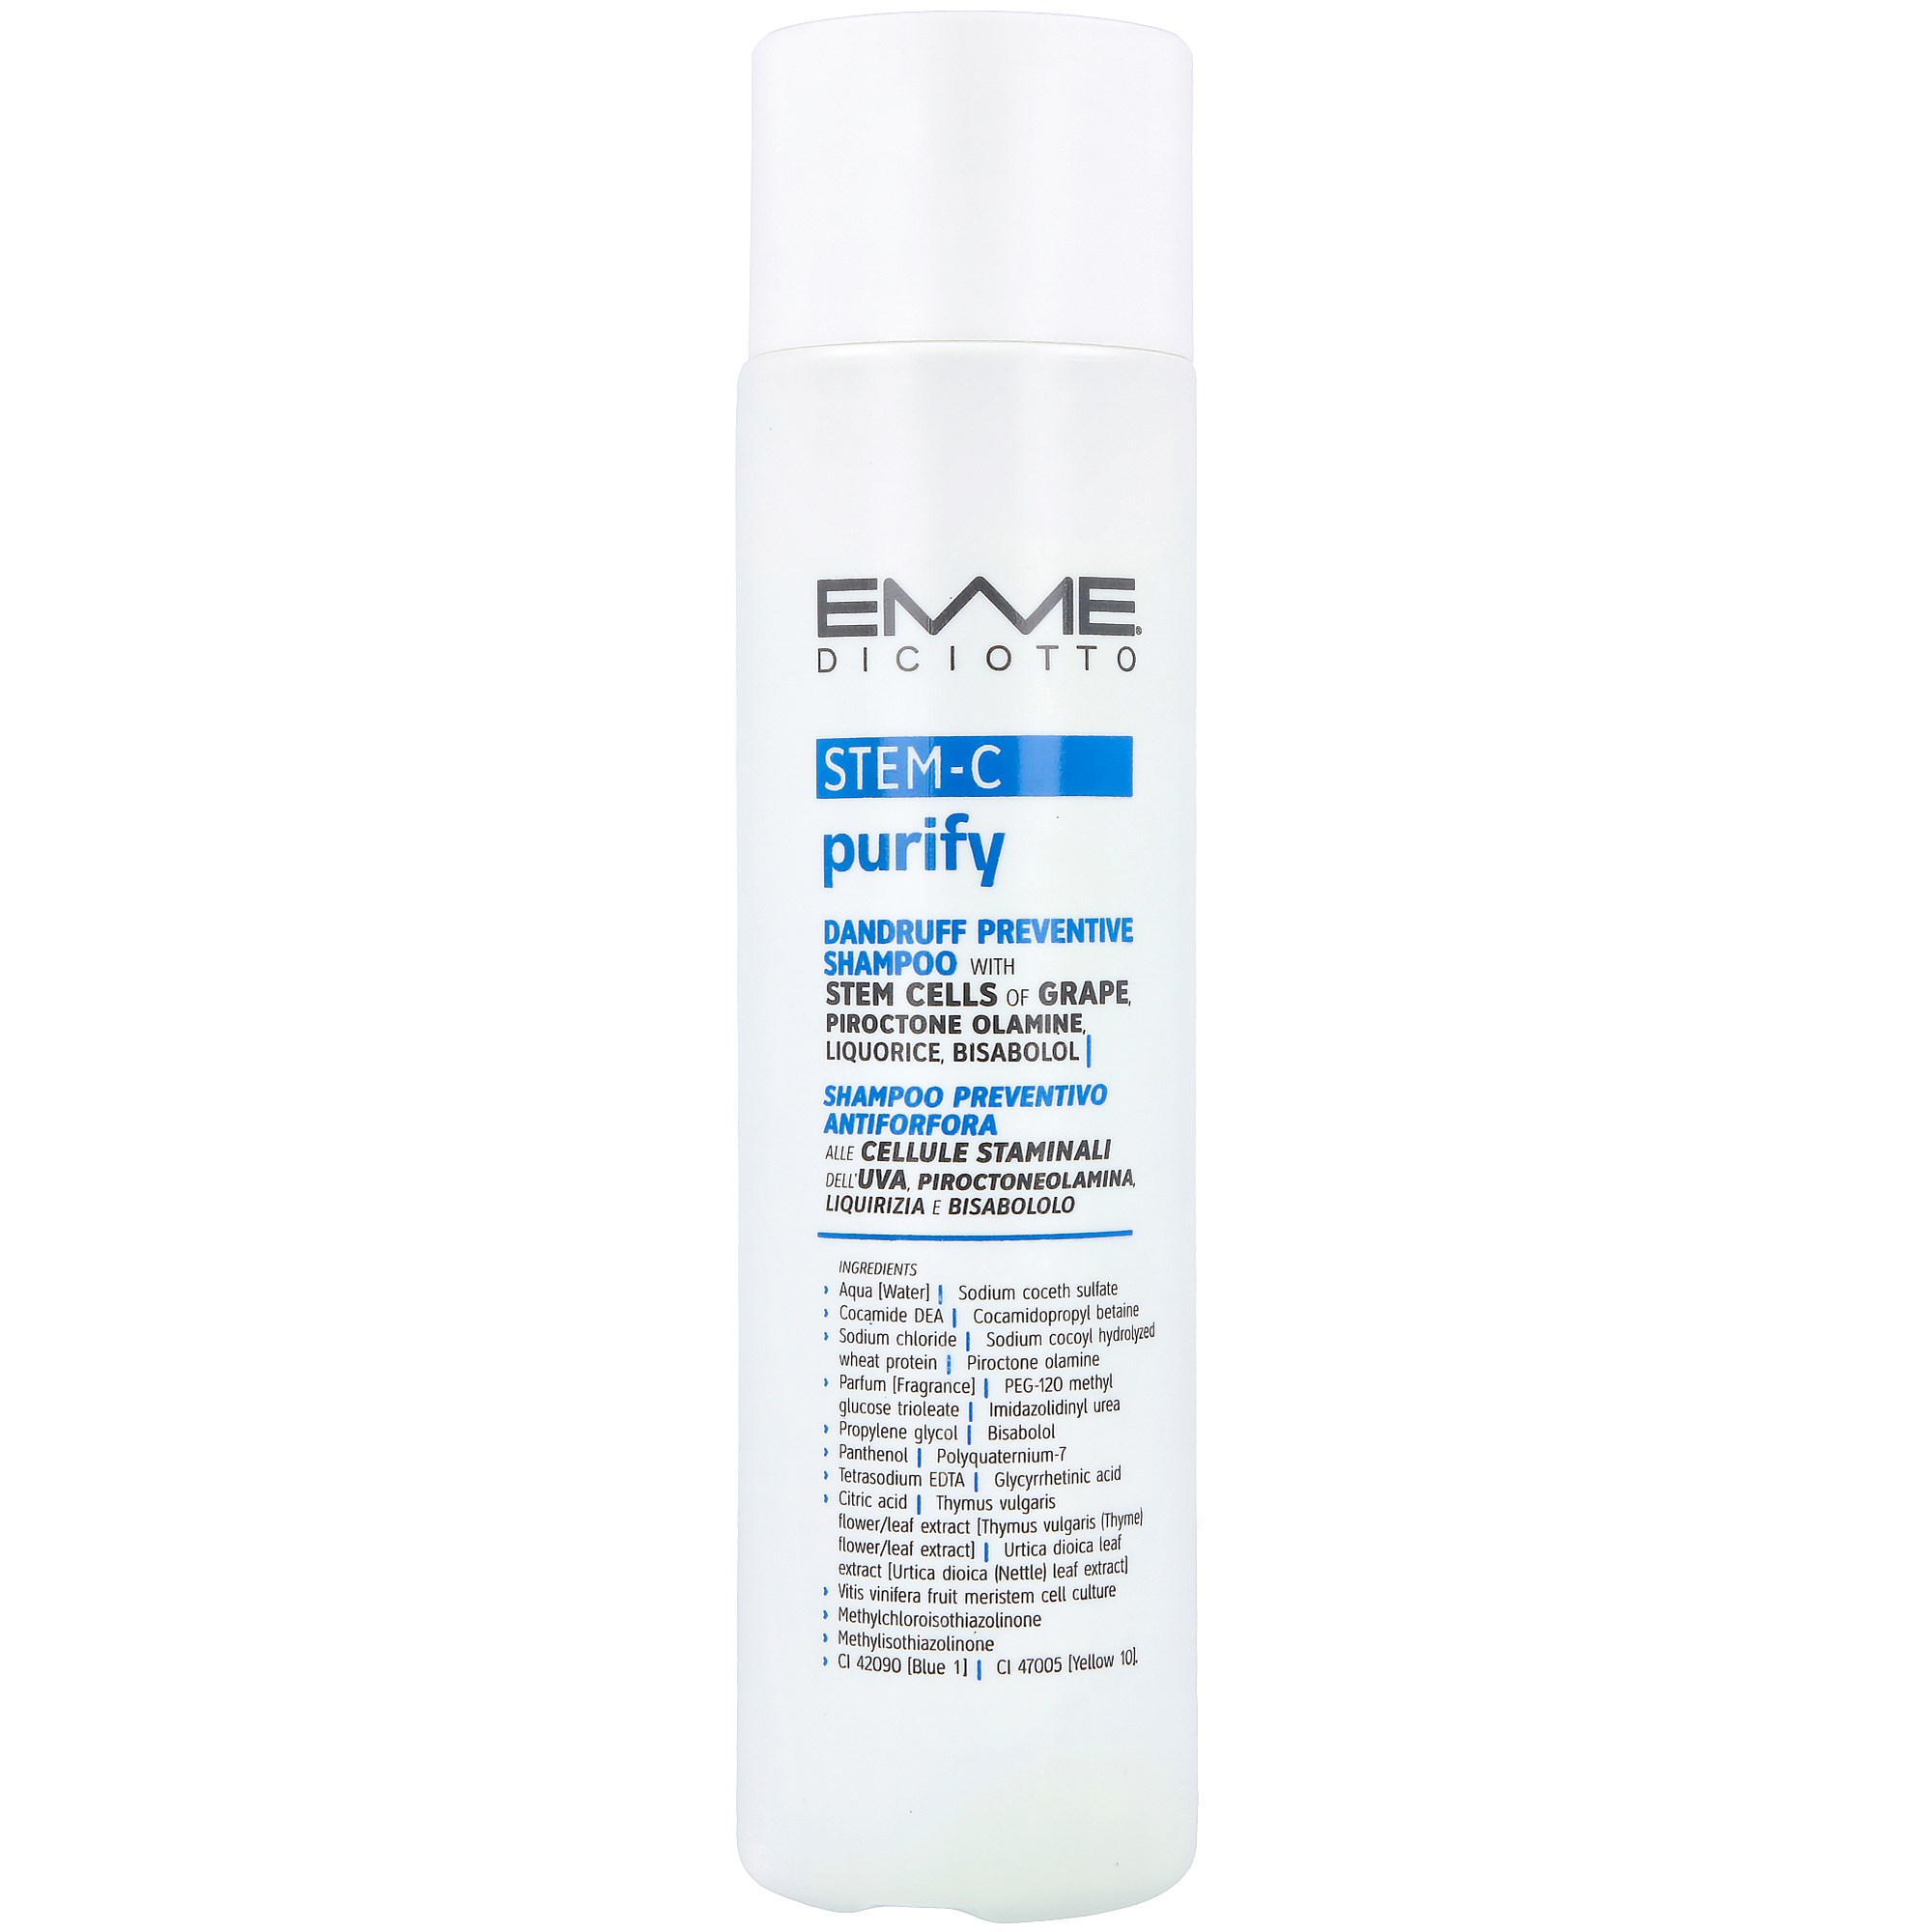 Emmediciotto STEM-C Purify Dandruff Preventive Shampoo 250 ml